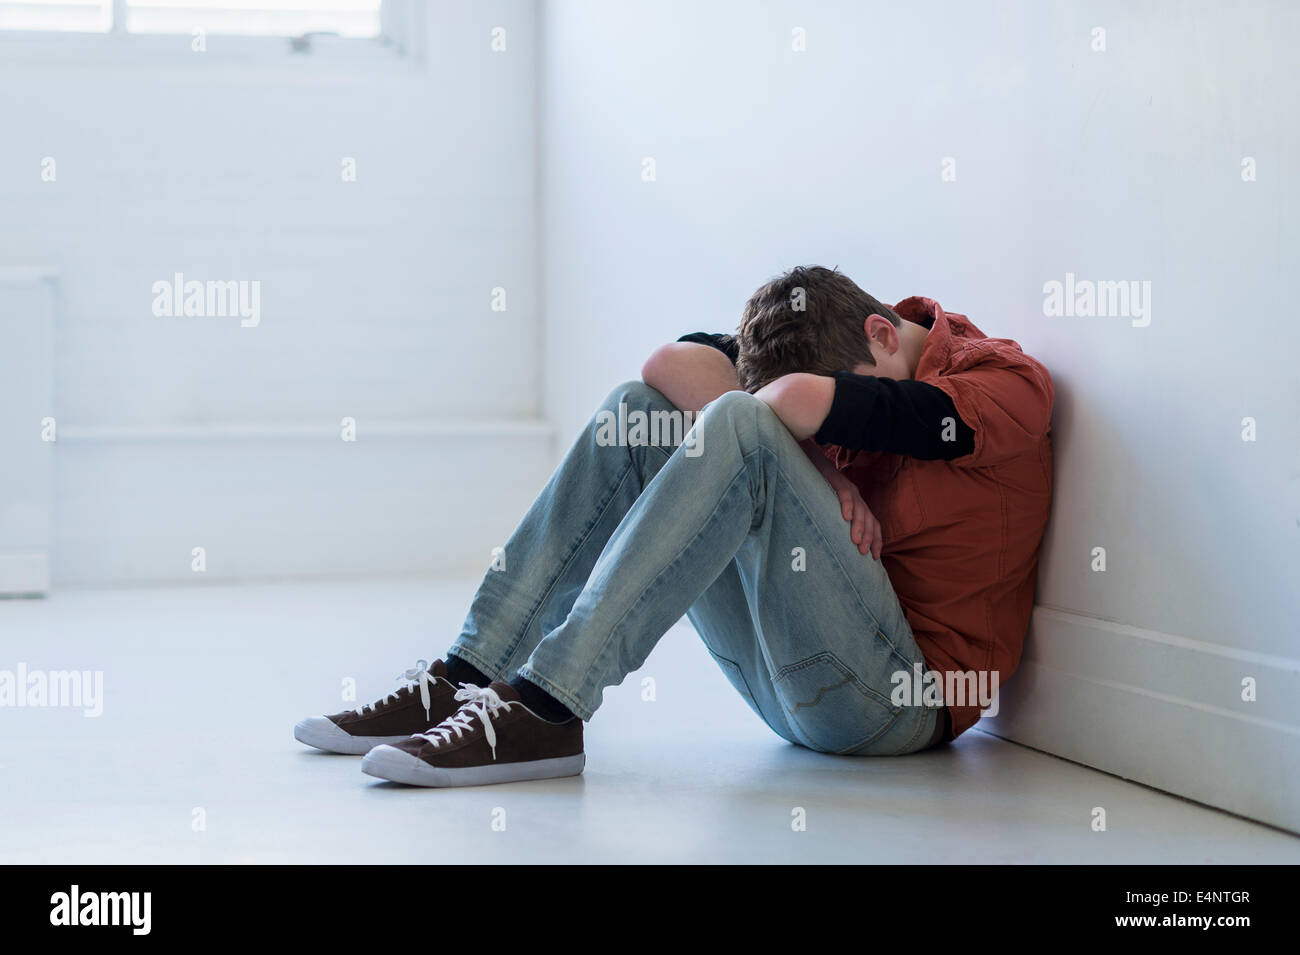 Adolescente (16-17) sentado en el pasillo Foto de stock